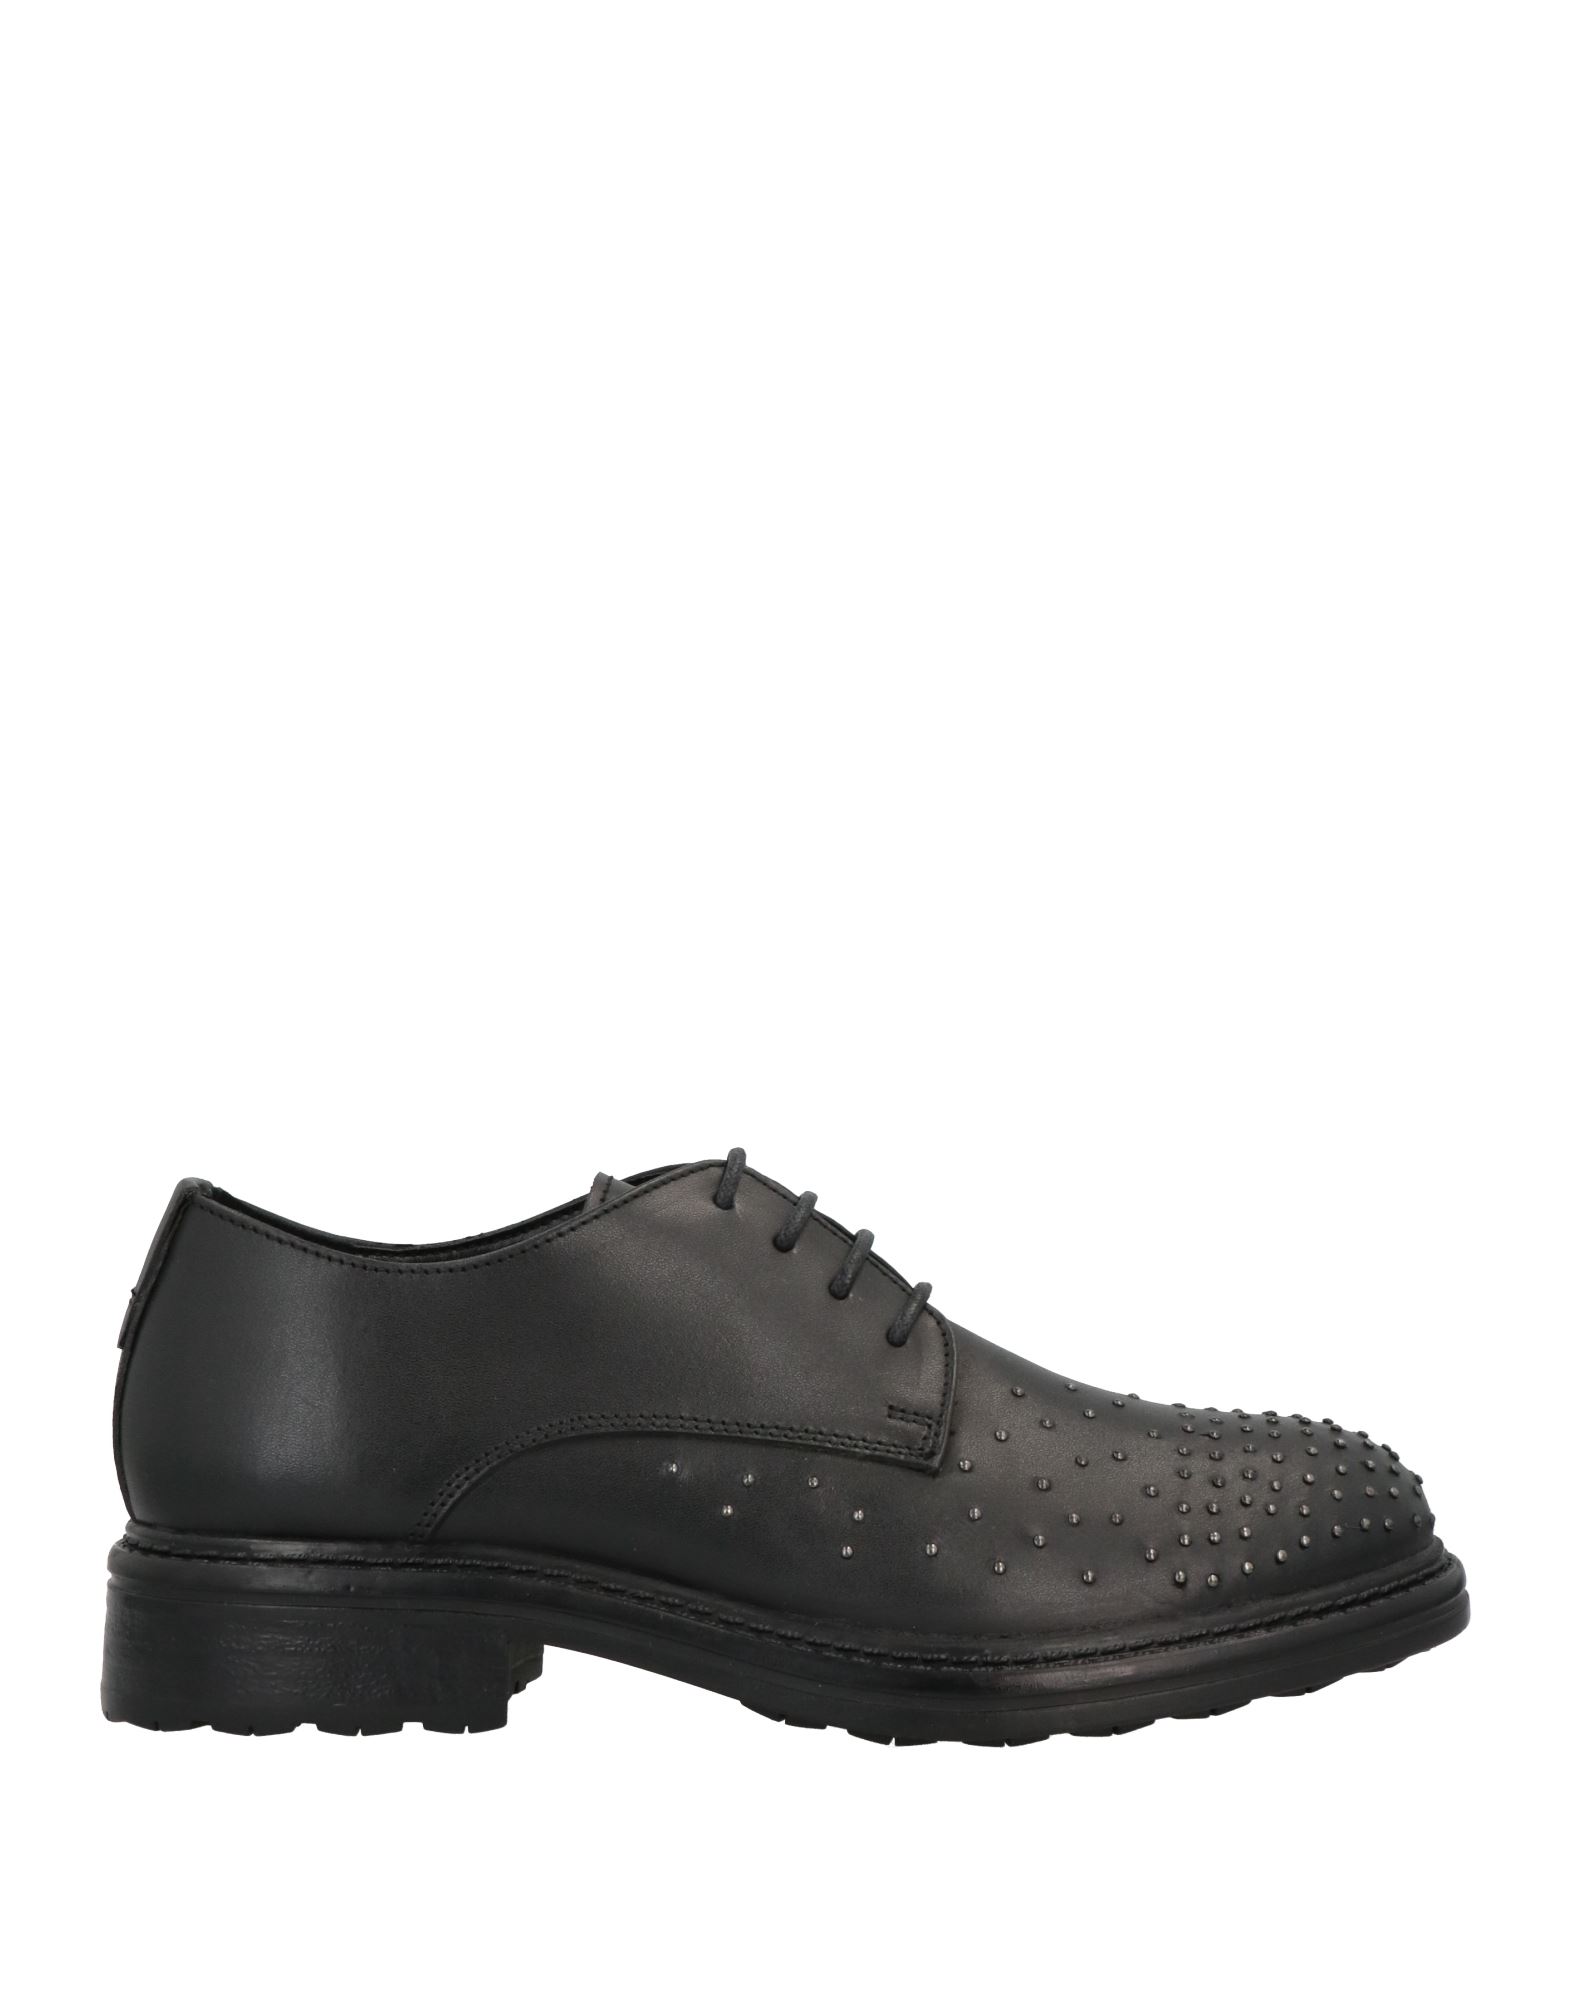 Shop Pregunta Woman Lace-up Shoes Black Size 8 Soft Leather